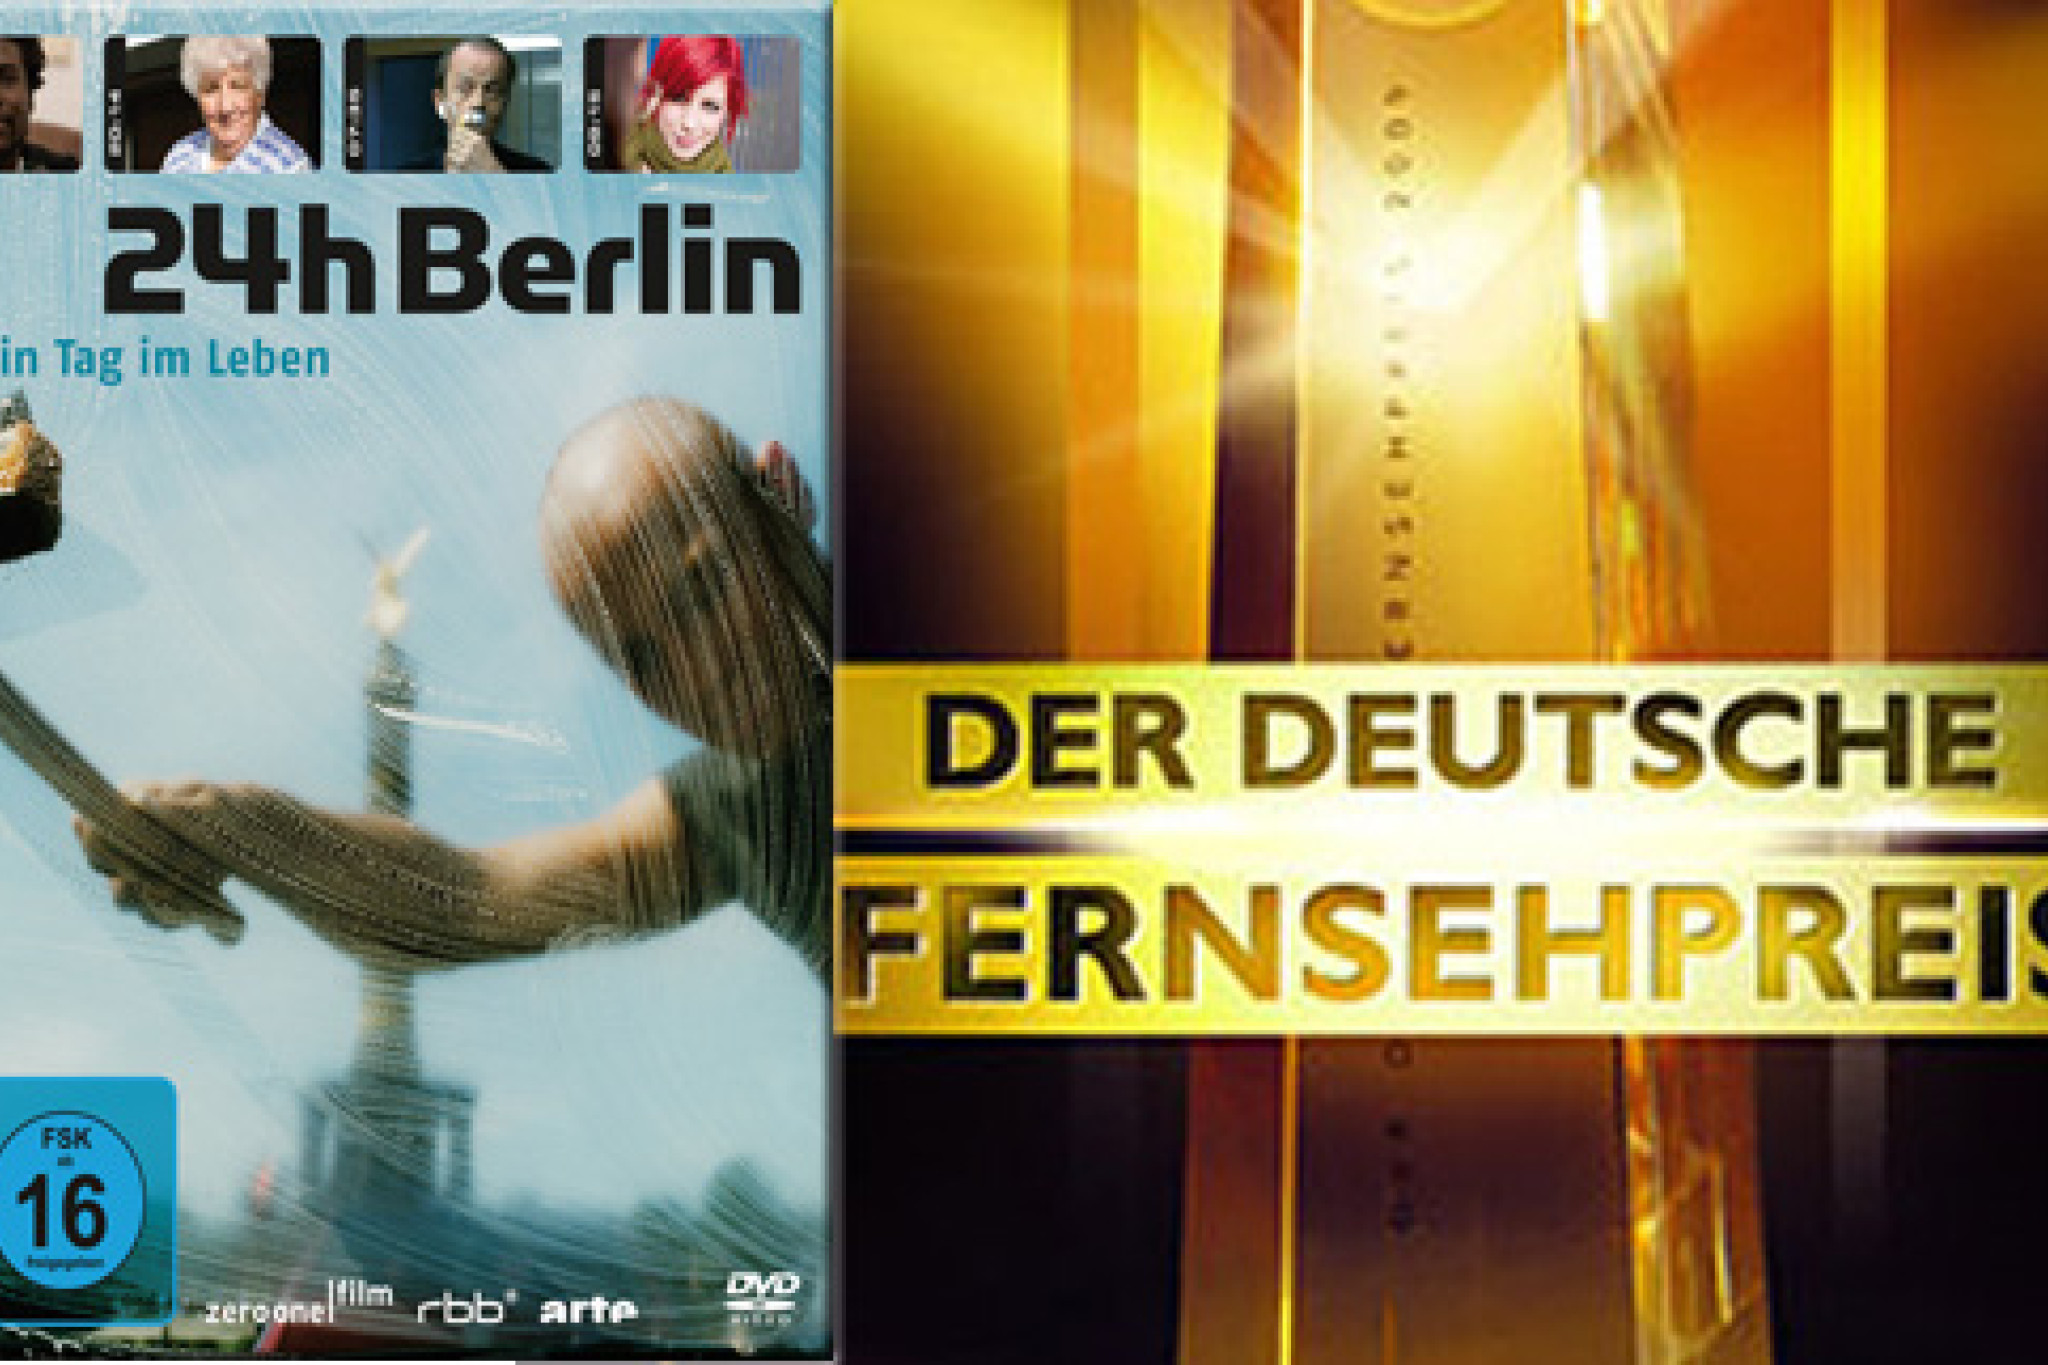 24h Berlin - Gewinner des Deutschen Fernsehpreises 2010